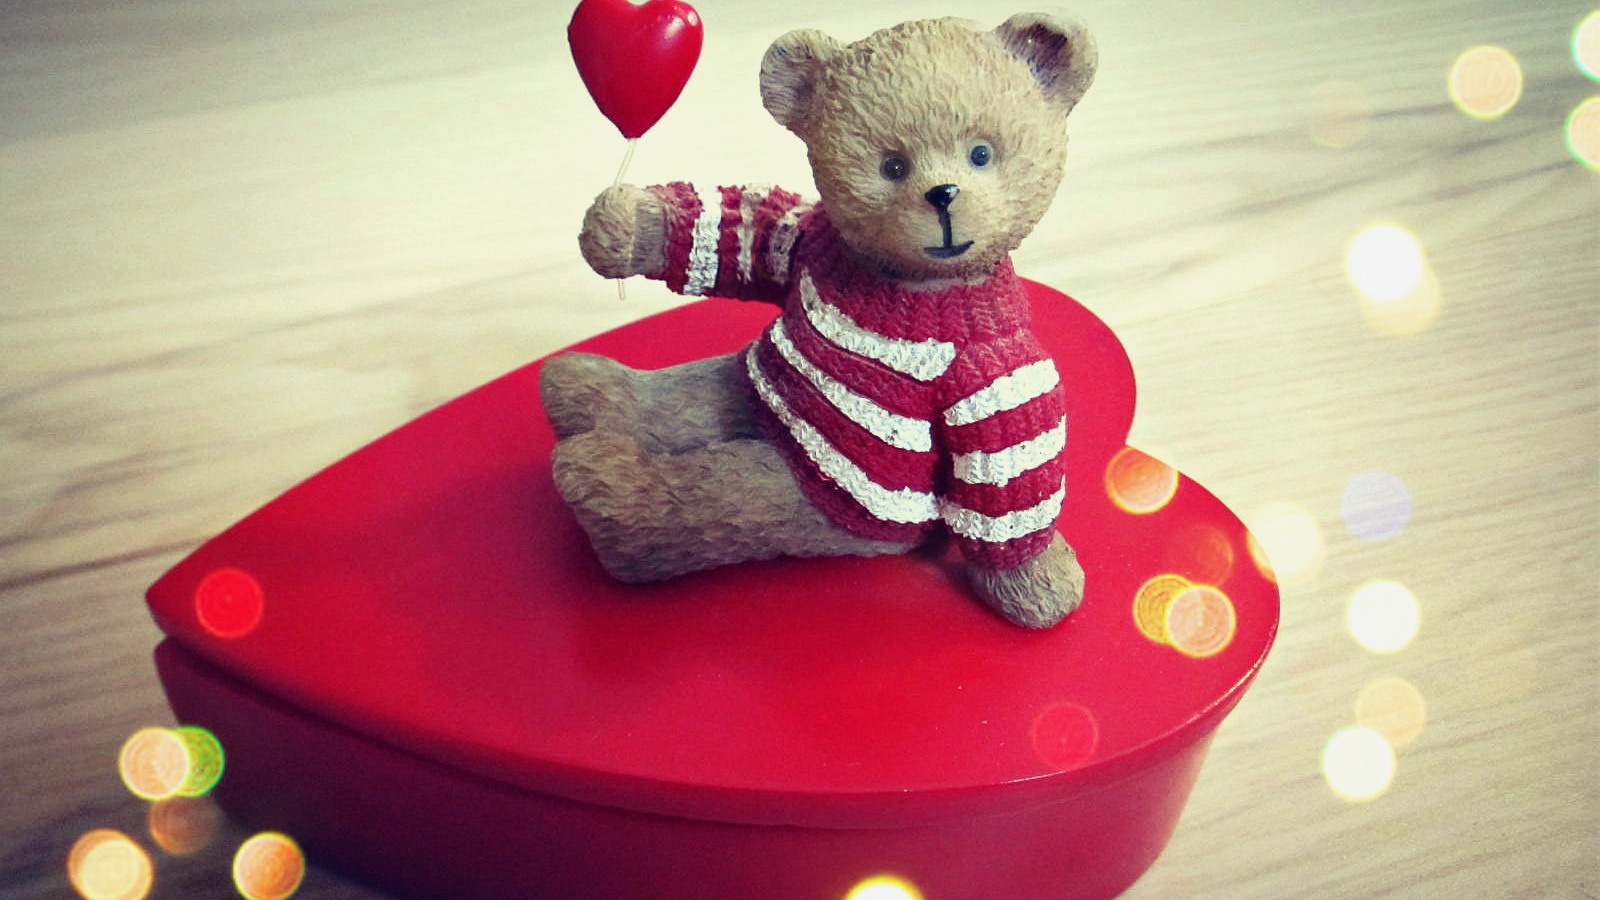 Love Teddy Bear Wallpaper Hd Desktop Wallpaper Instagram - Teddy Day Images  Hd Download - 1600x900 Wallpaper 